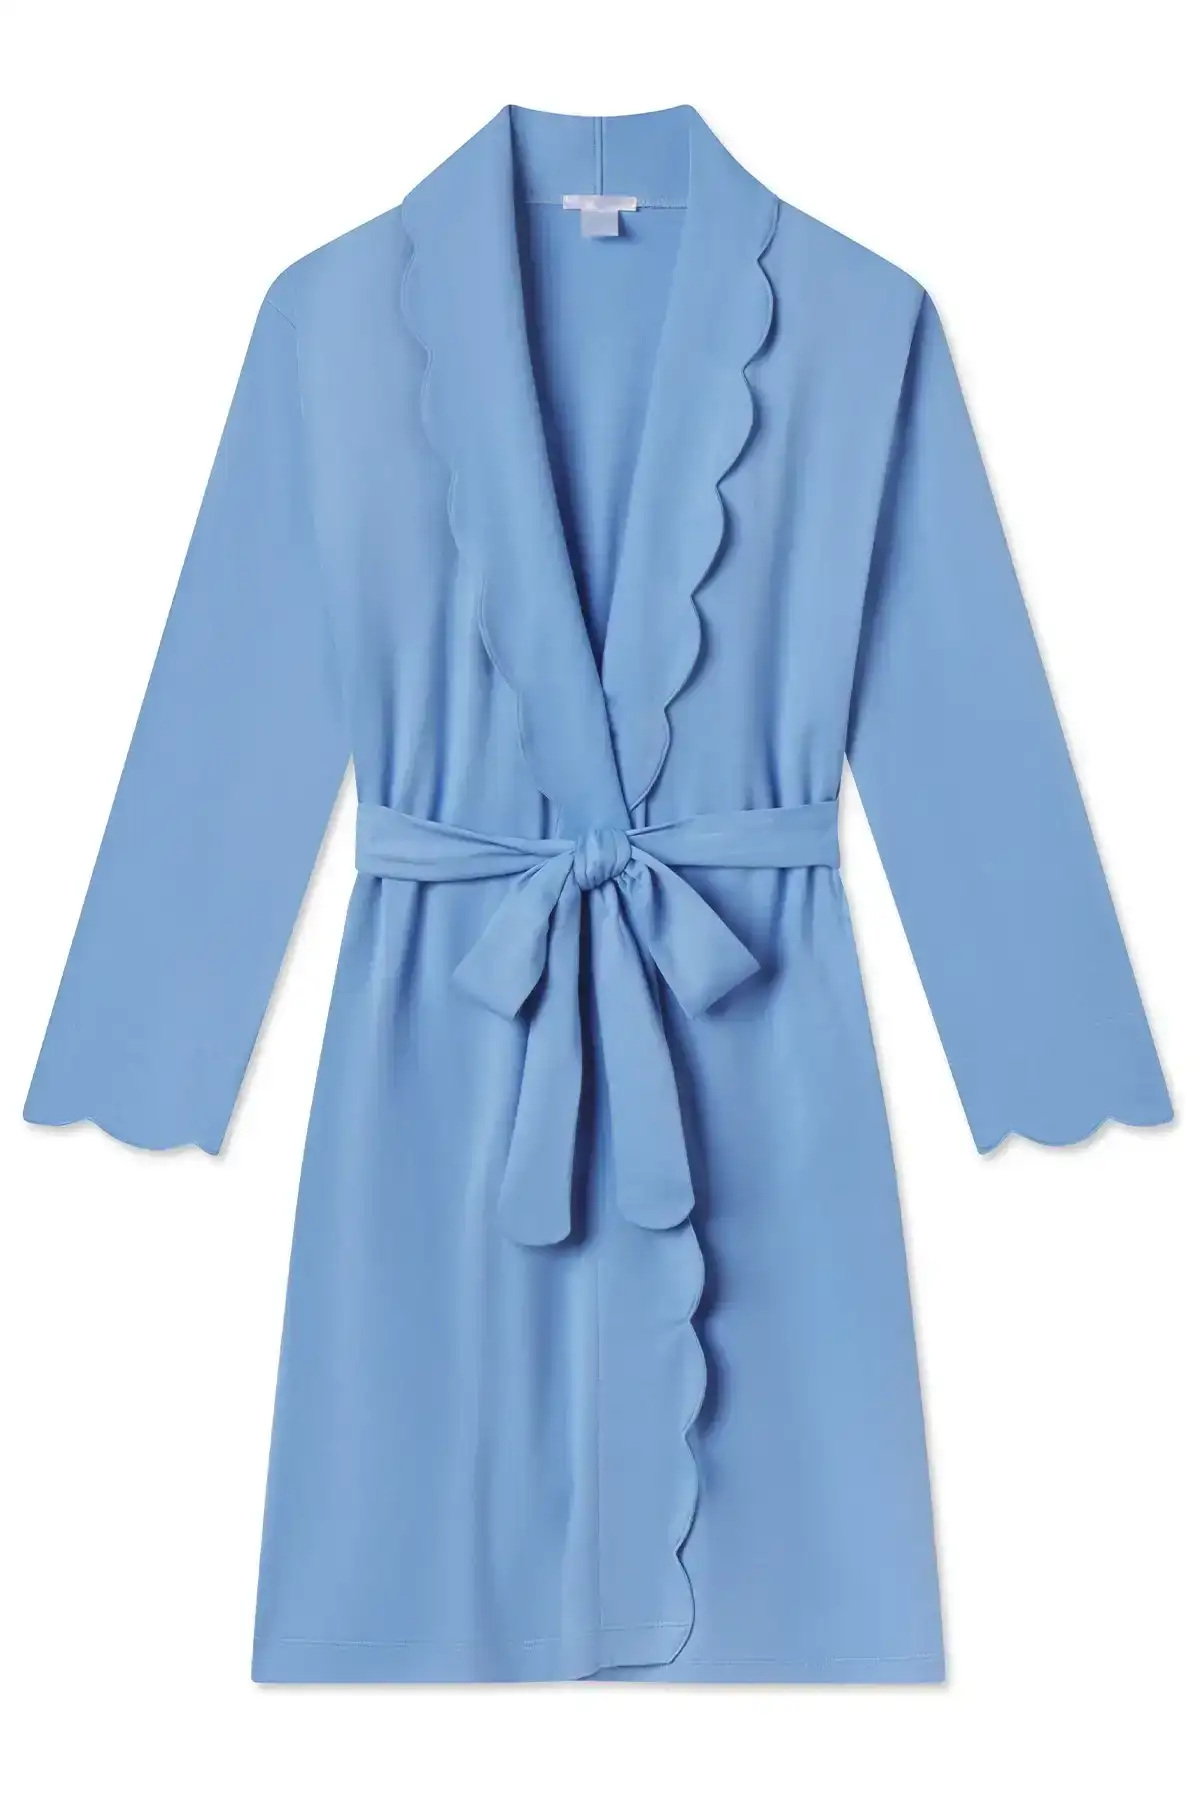 Image of Pima Scallop Robe in Baltic Blue